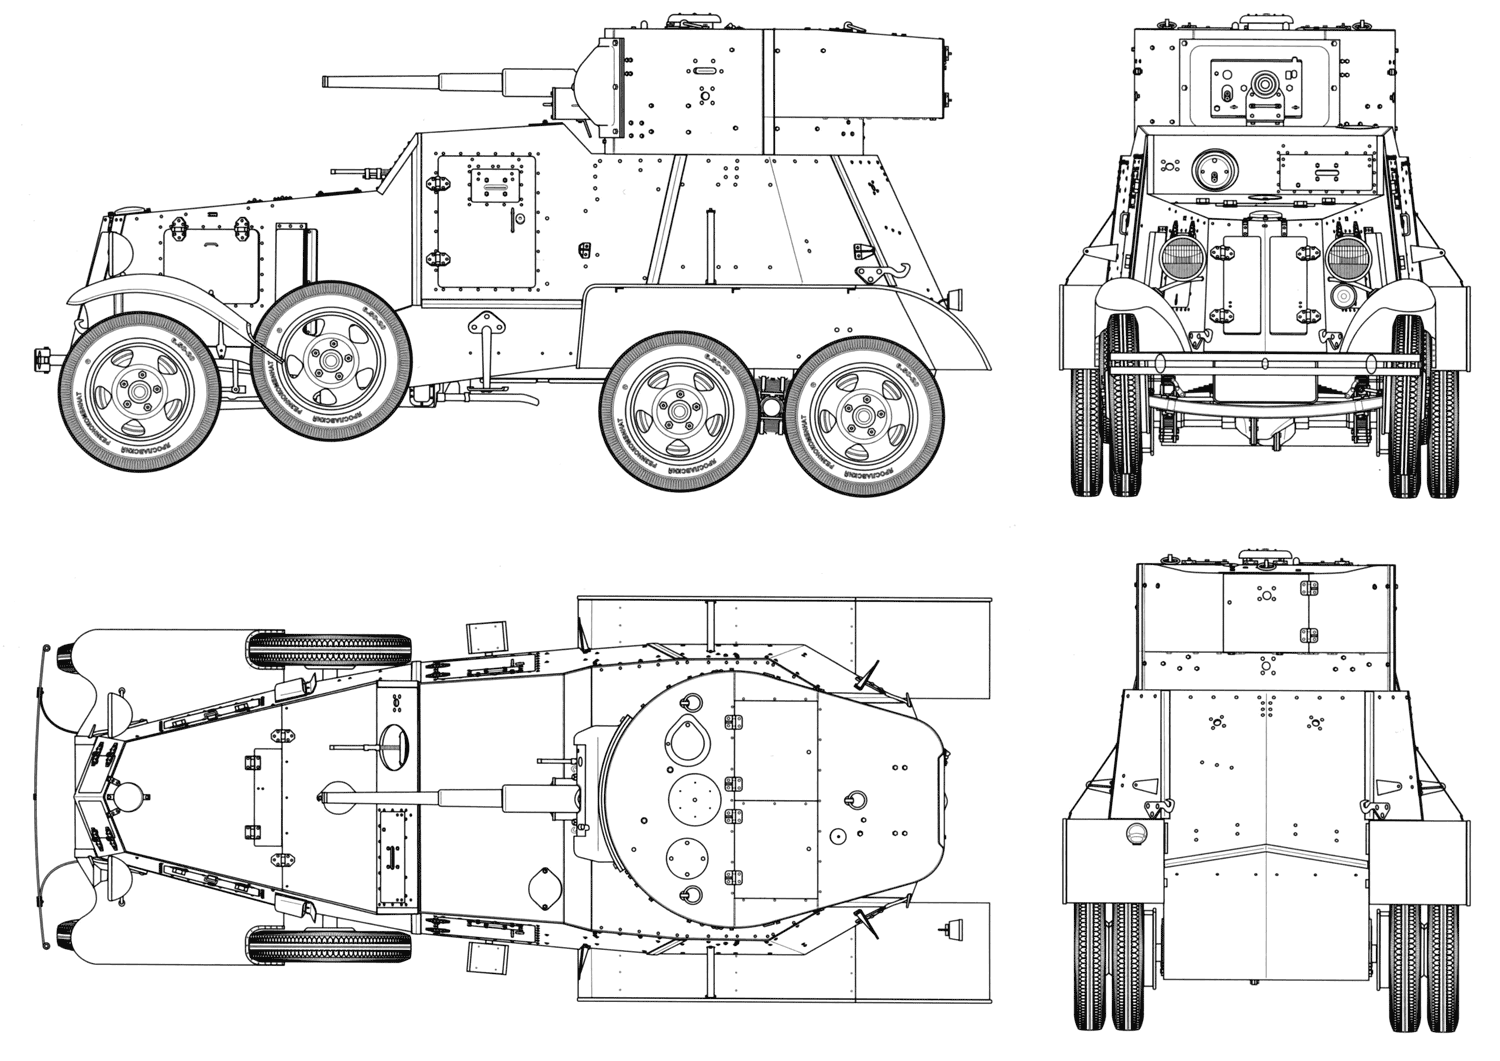 BA-6 blueprint